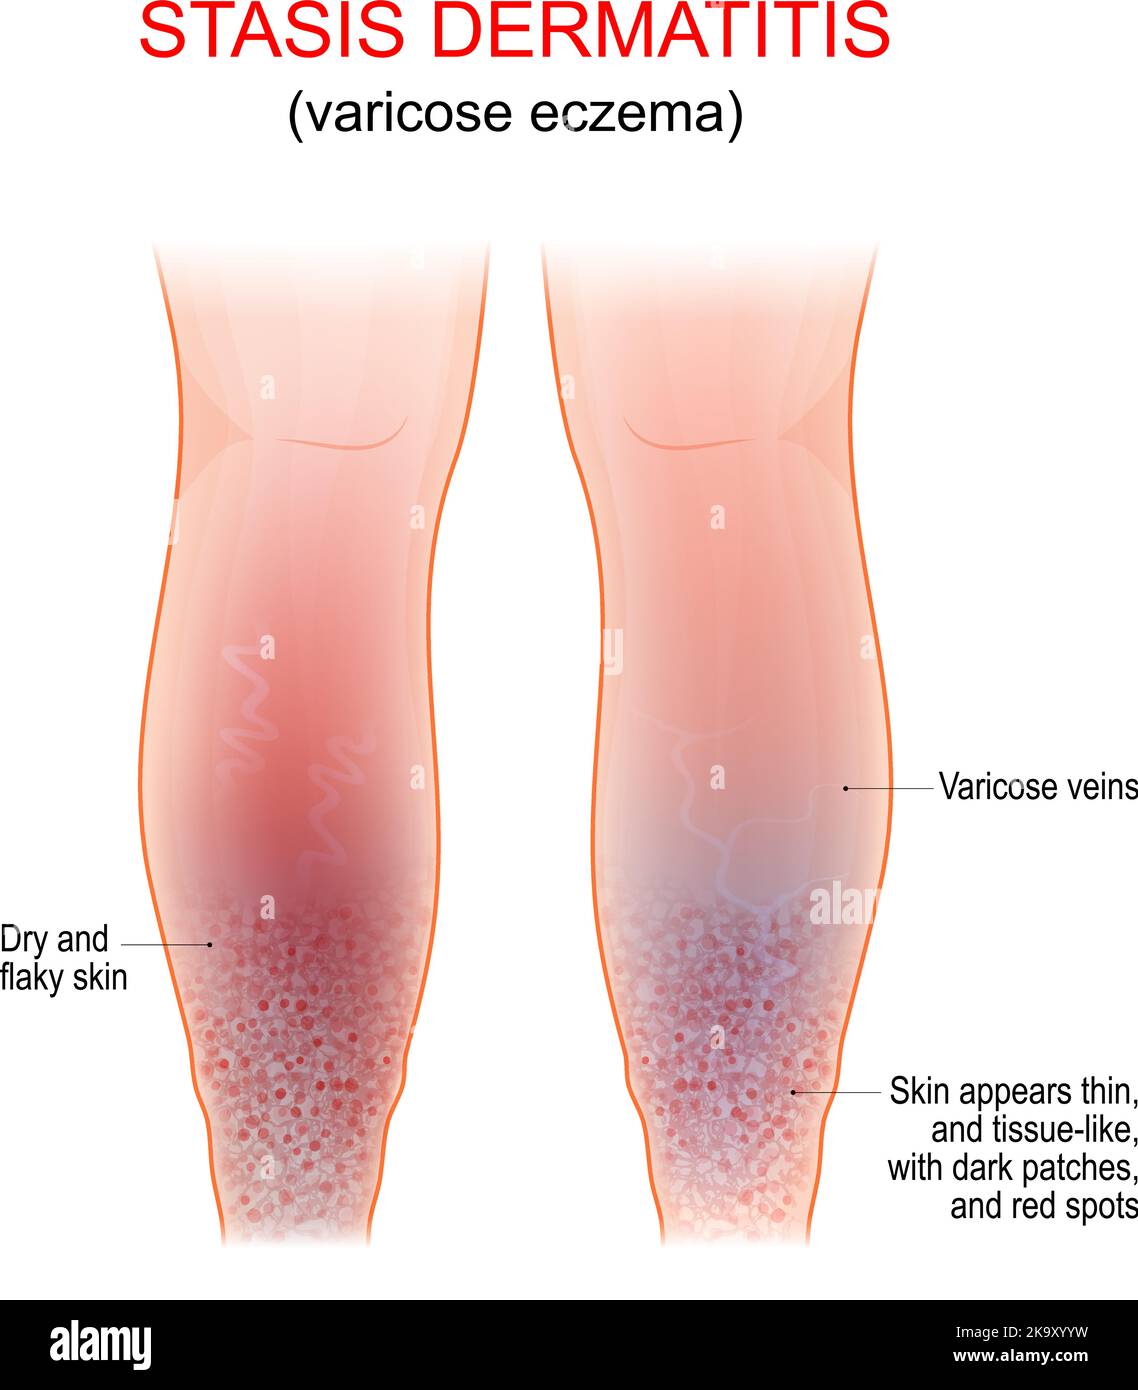 Eccema varicosa. Síntomas de dermatitis venosa, gravitacional o estasis. Afección prolongada de la piel que afecta la parte inferior de las piernas con venas varicosas Ilustración del Vector